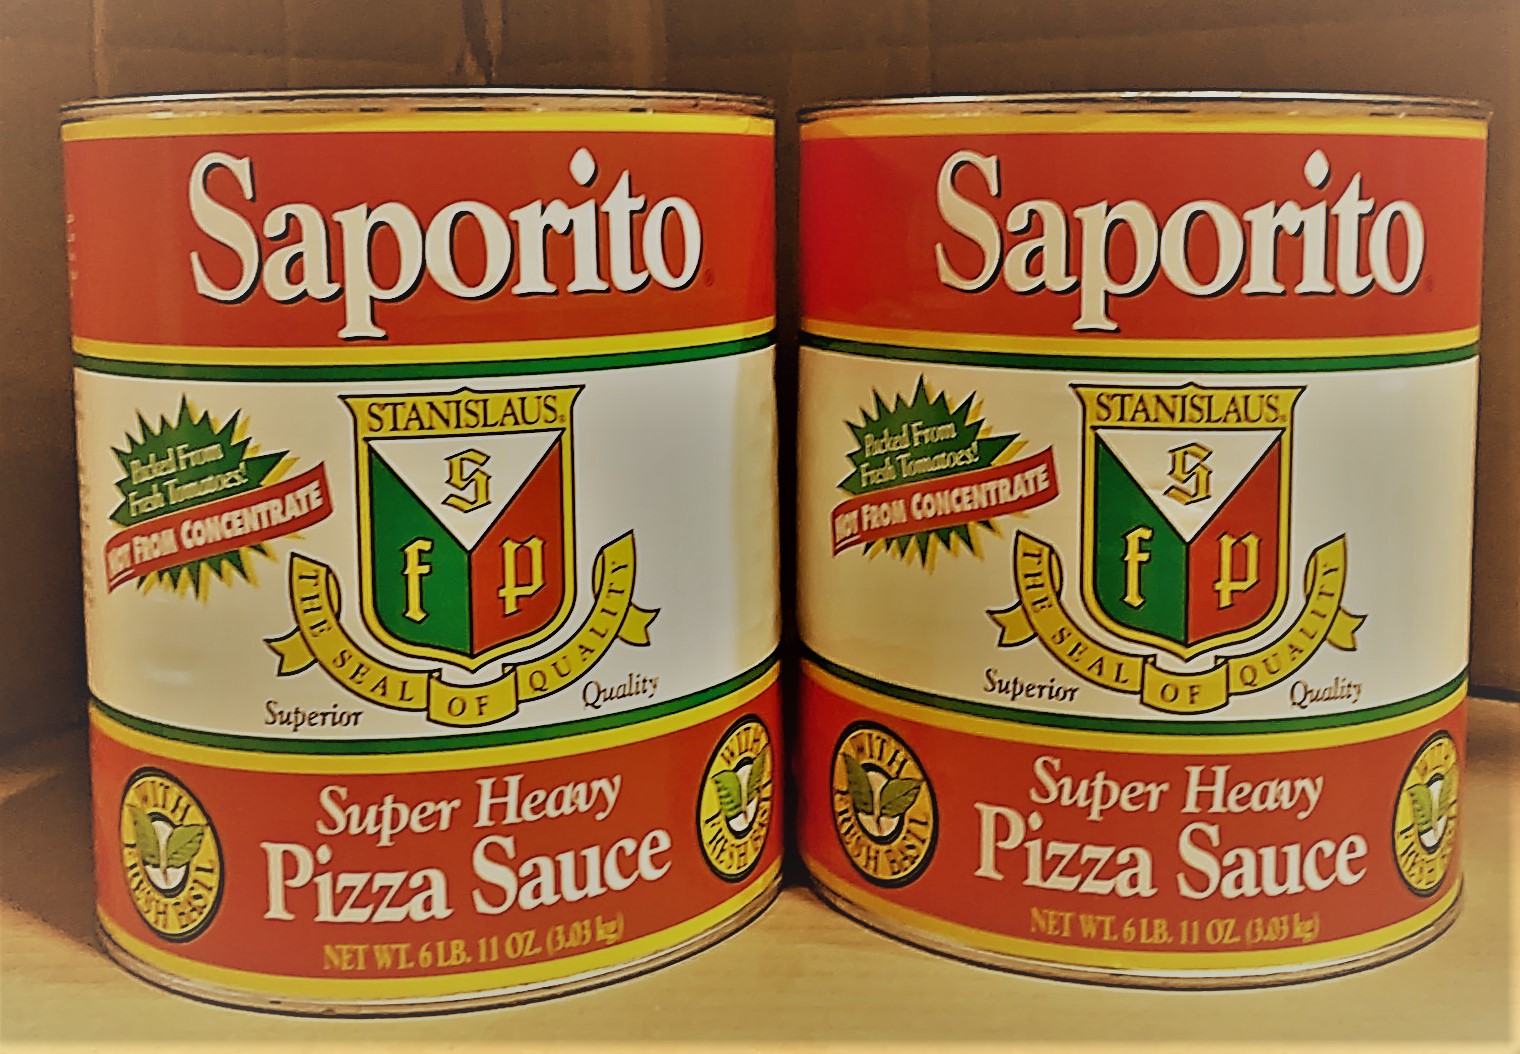 Stanislaus - Saporito Super Heavy Pizza Sauce 6/#10